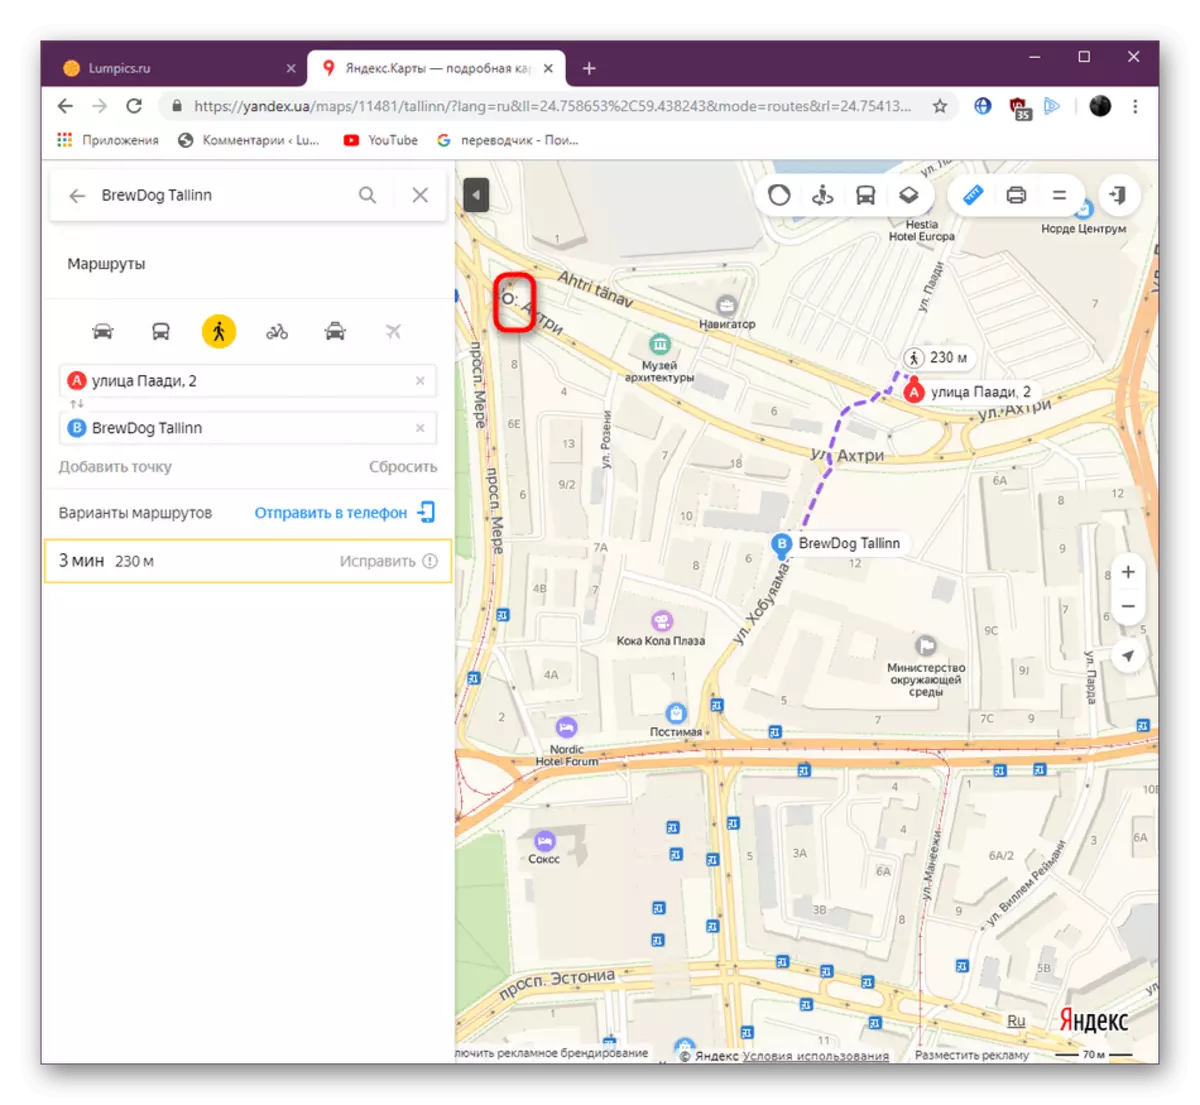 Lắp đặt điểm đầu tiên cho các công cụ công cụ trên trang web Yandex.Maps